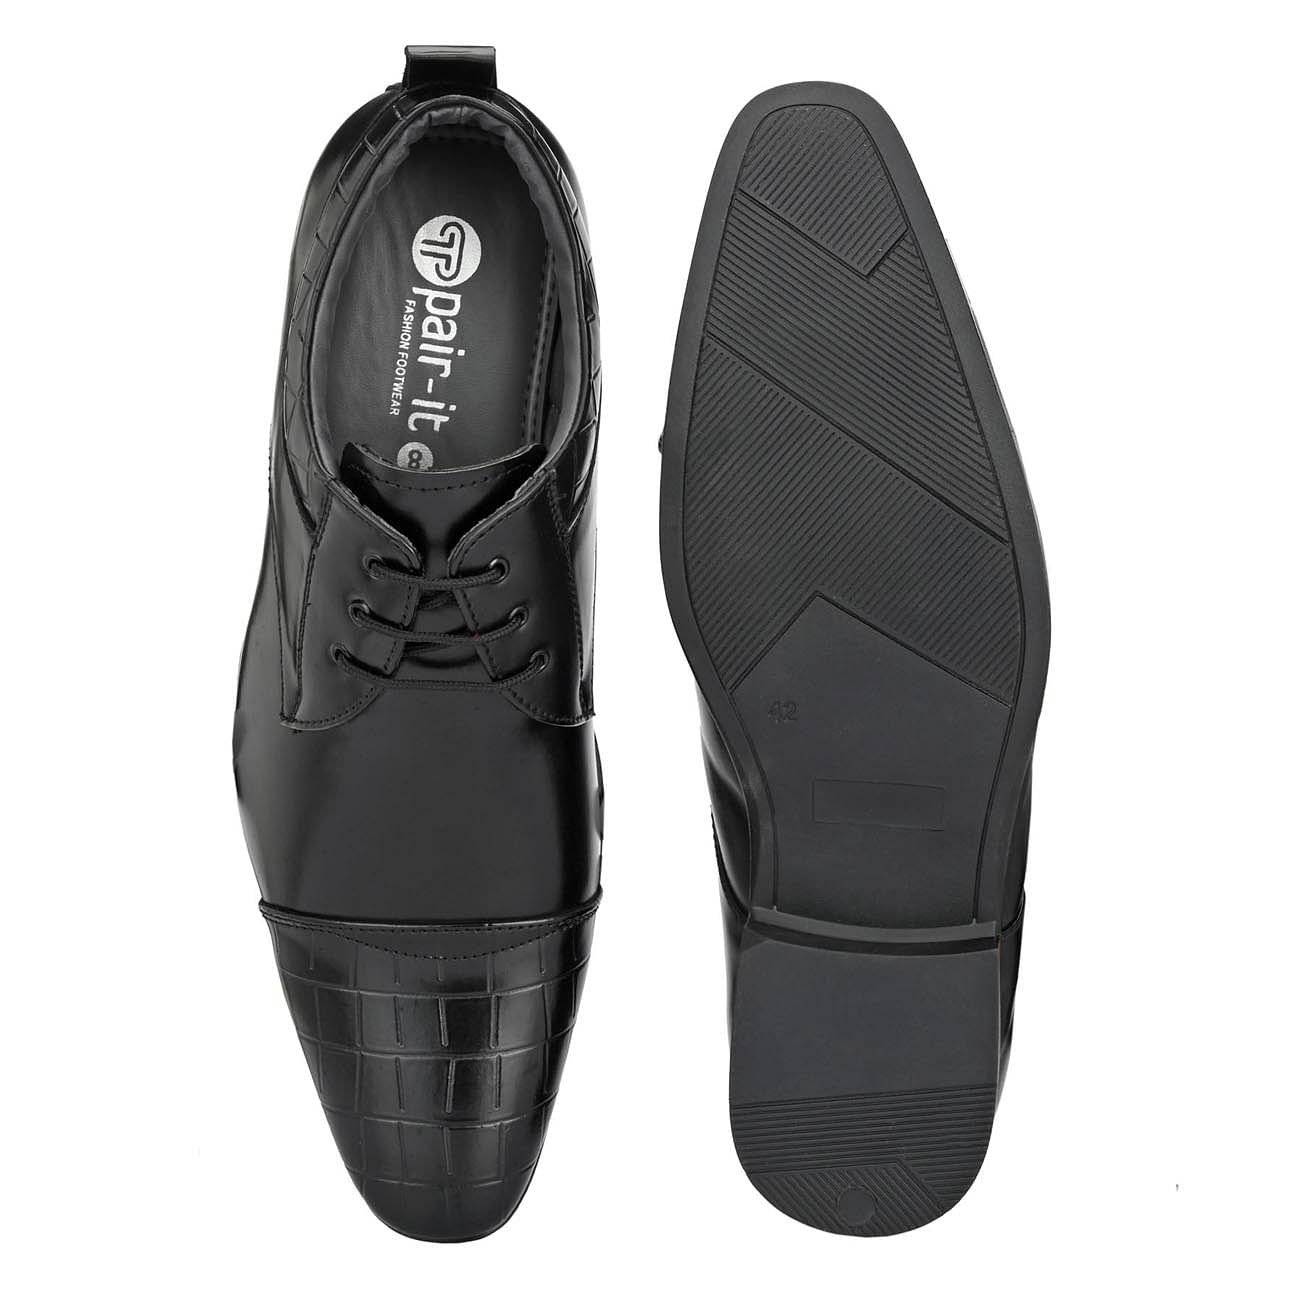 Pair-it Men's Formal Shoes - Black- LZ-T-FORMAL102